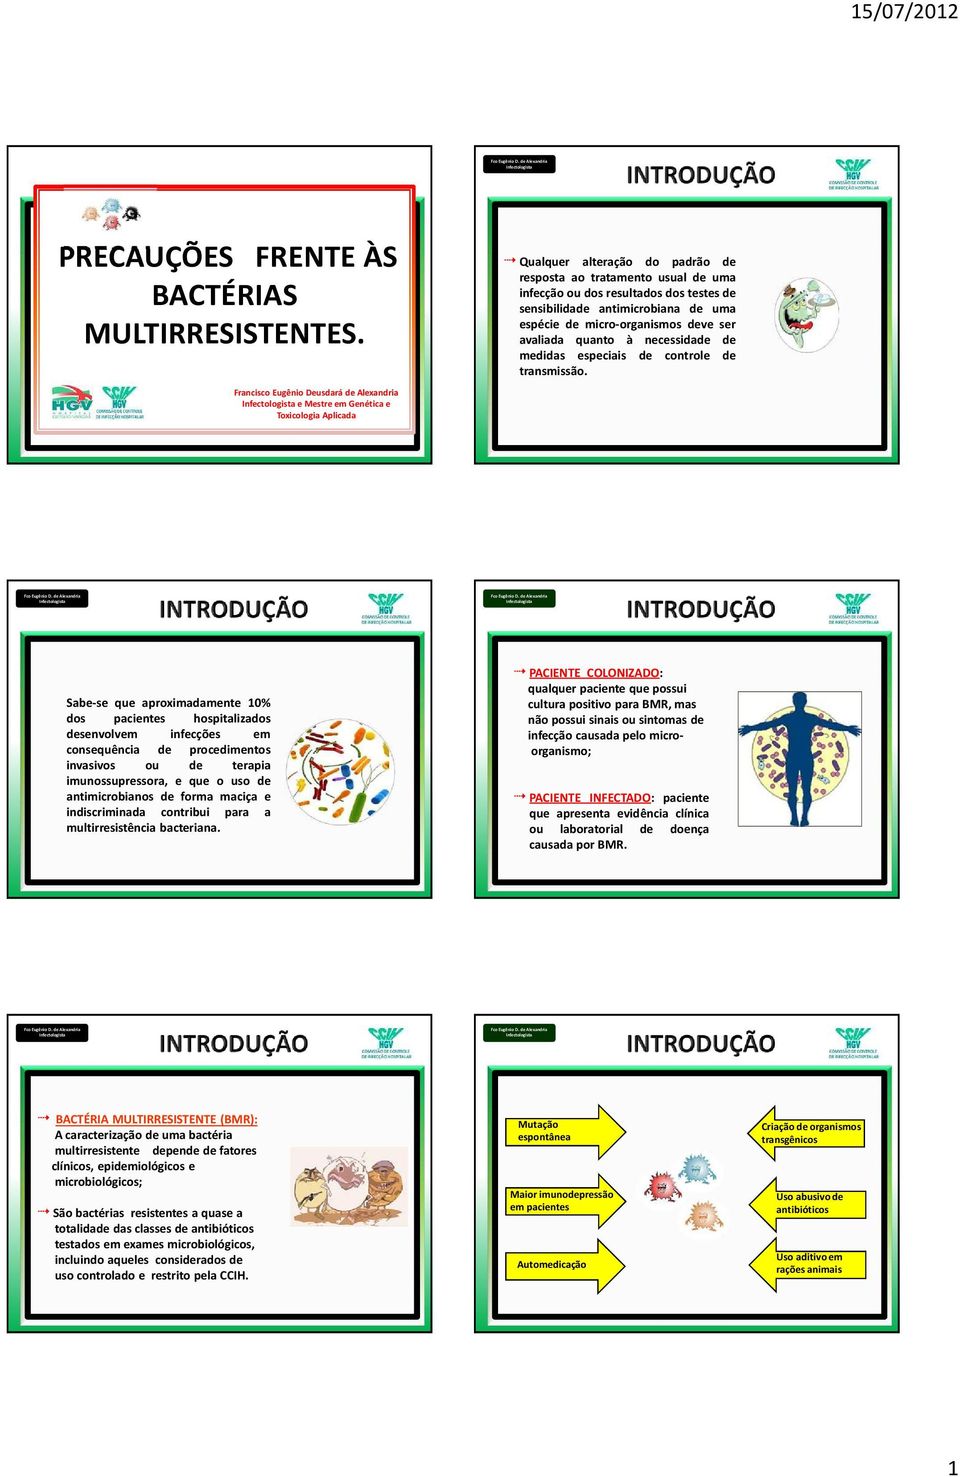 sensibilidade antimicrobiana de uma espécie de micro-organismos deve ser avaliada quanto à necessidade de medidas especiais de controle de transmissão.